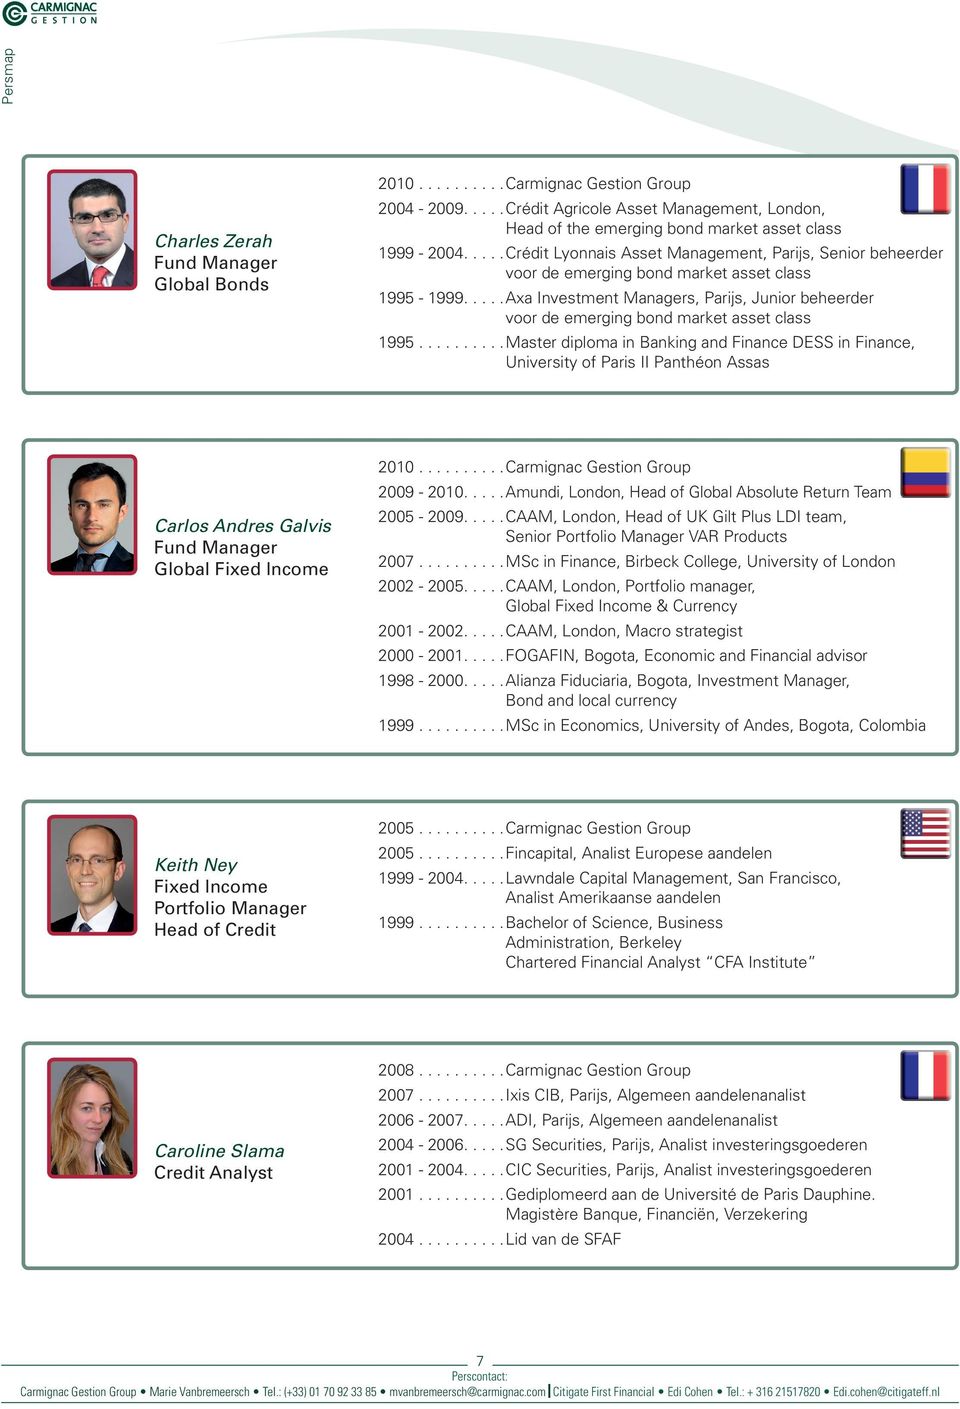 ....Axa Investment Managers, Parijs, Junior beheerder voor de emerging bond market asset class 1995.